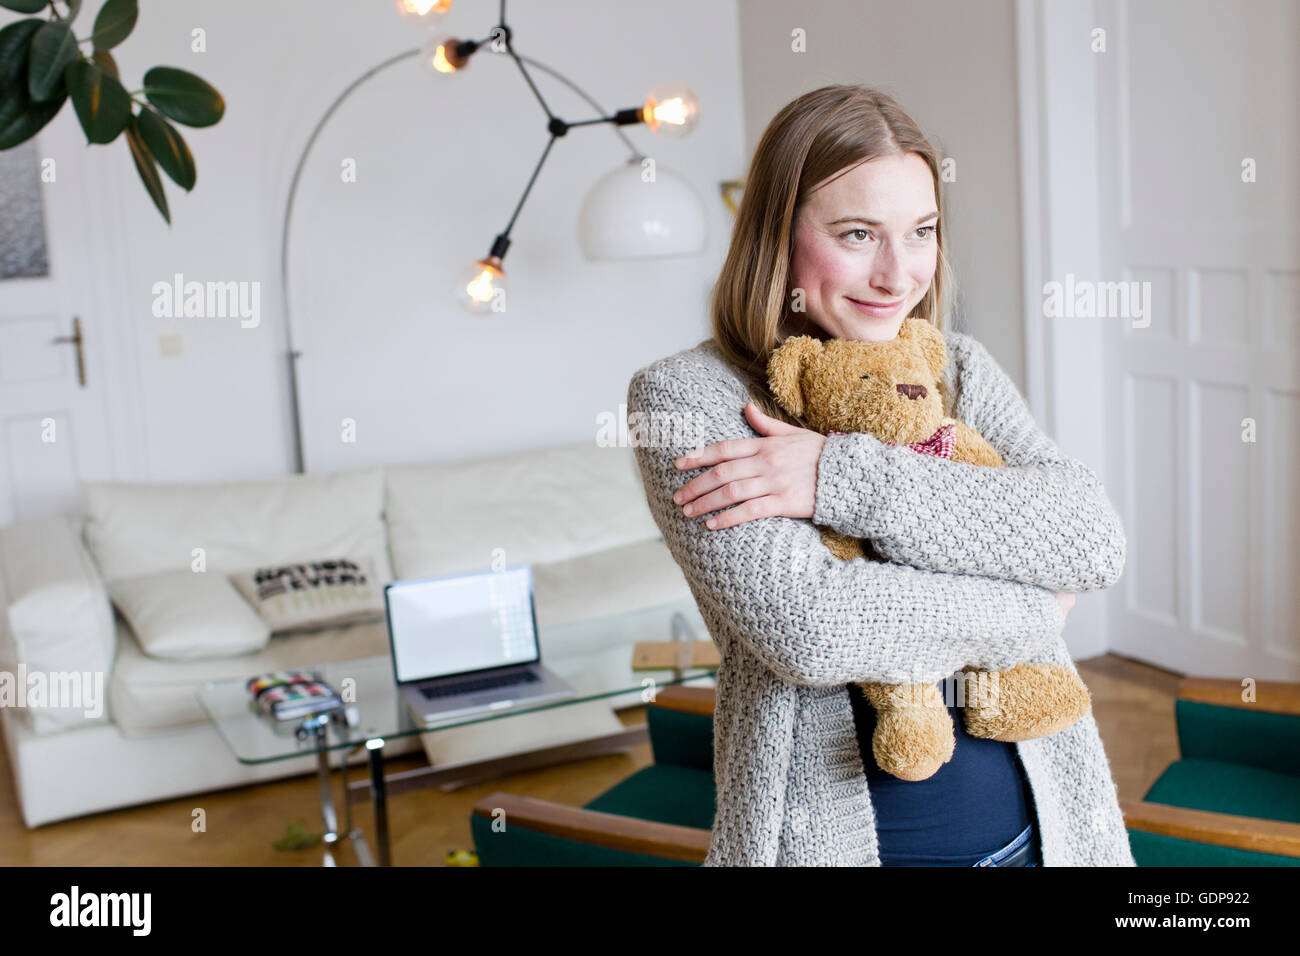 Metà donna adulta abbracciando Teddy bear in salotto Foto Stock